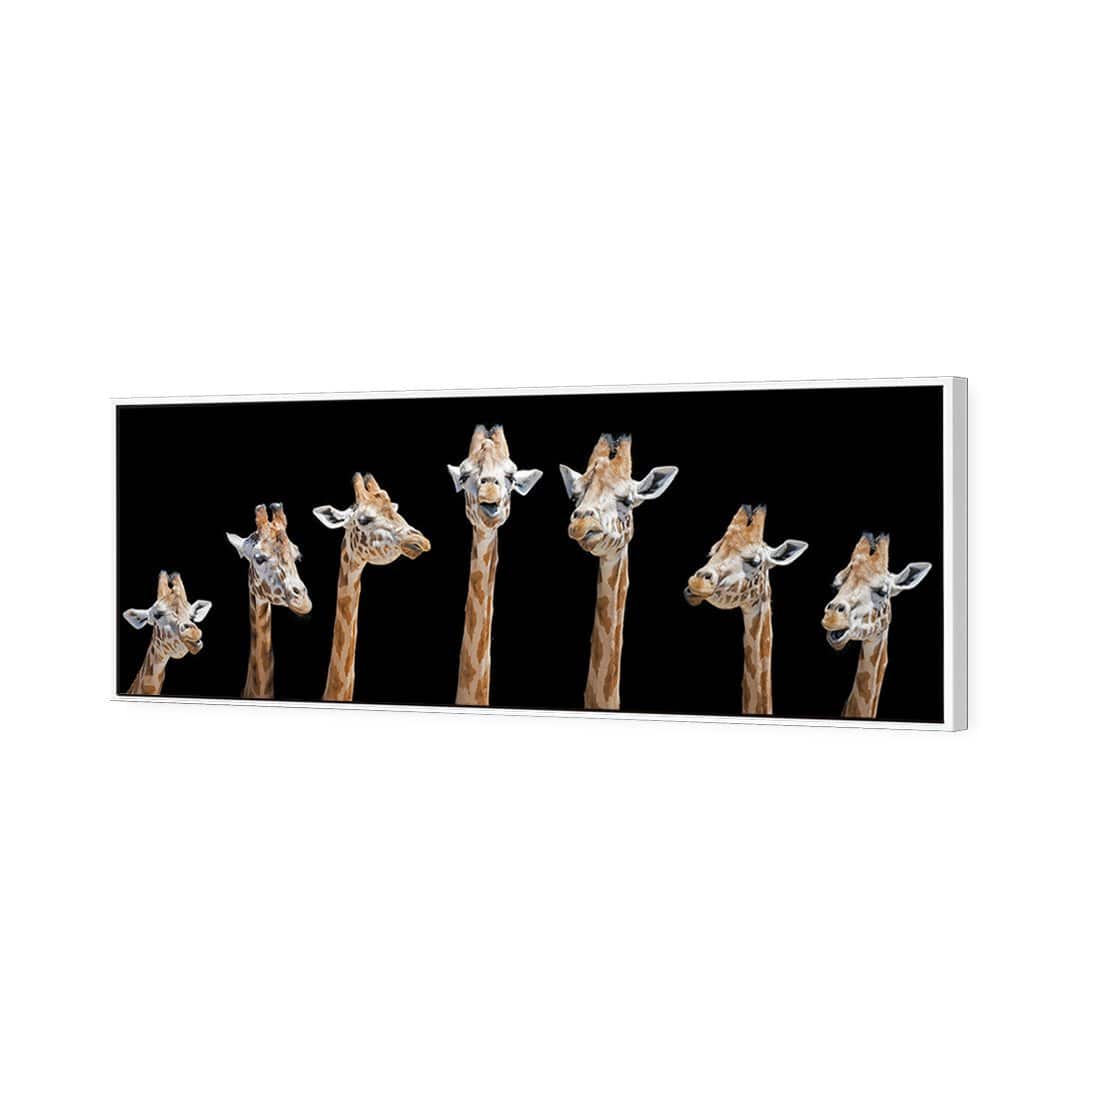 Laughing Giraffes Canvas Art-Canvas-Wall Art Designs-60x20cm-Canvas - White Frame-Wall Art Designs